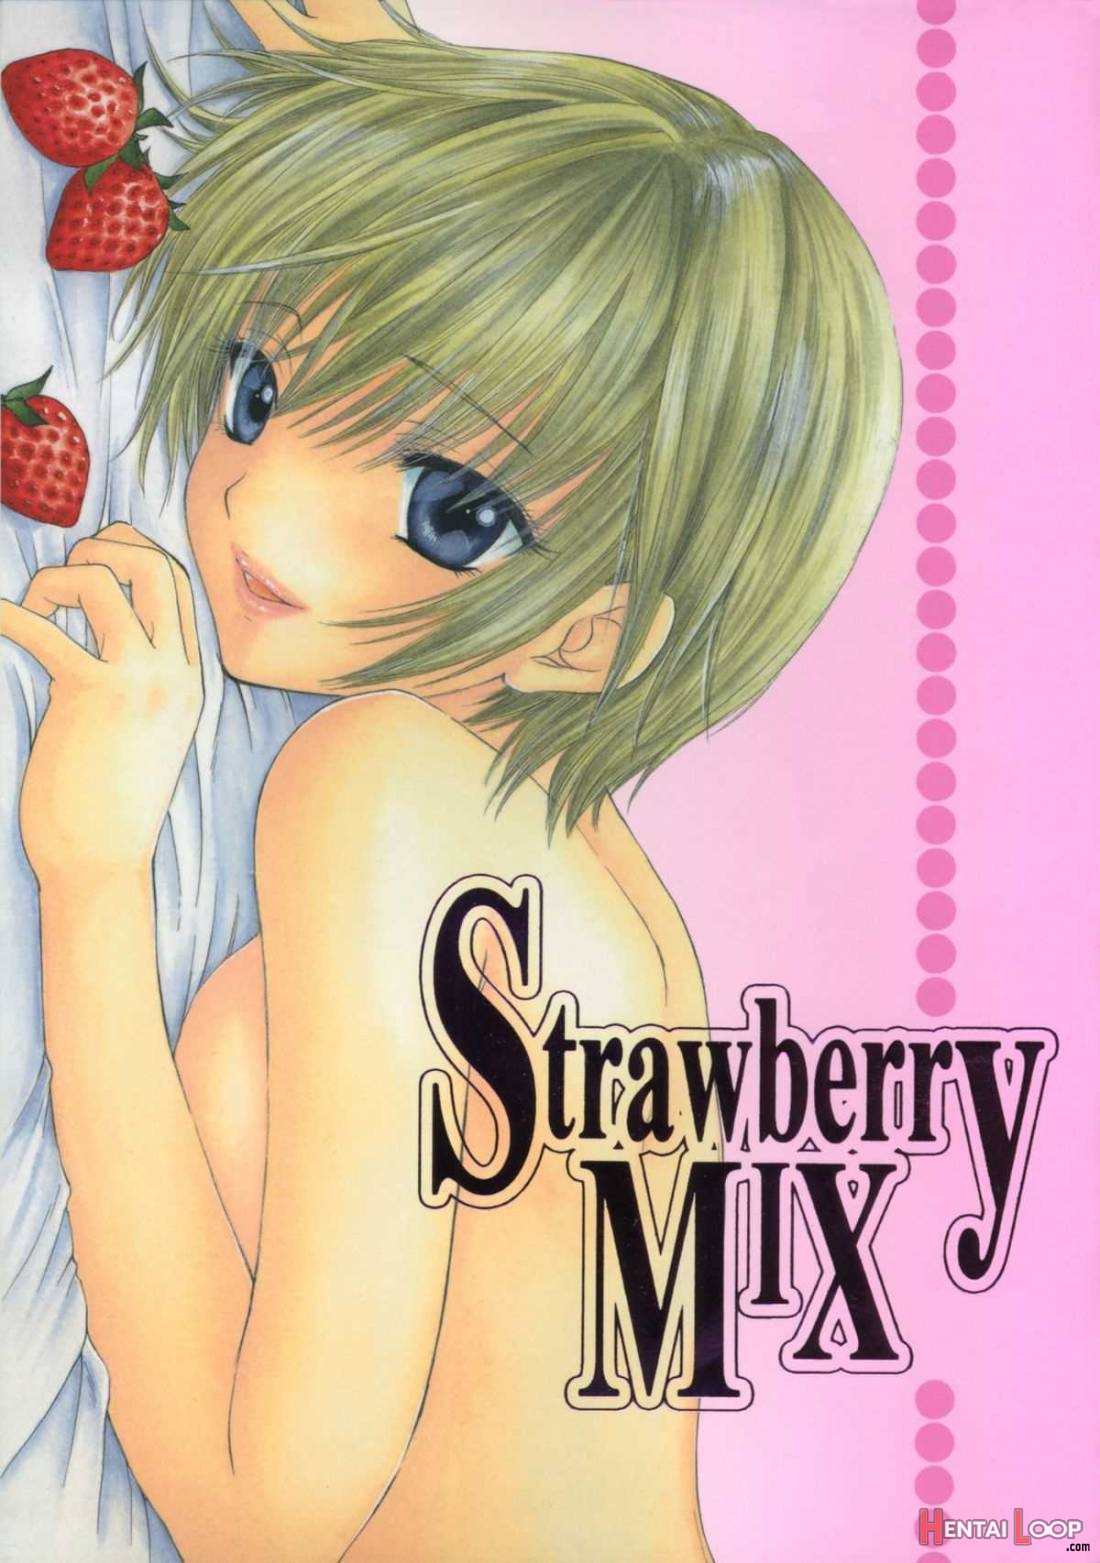 Strawberry MIX page 1